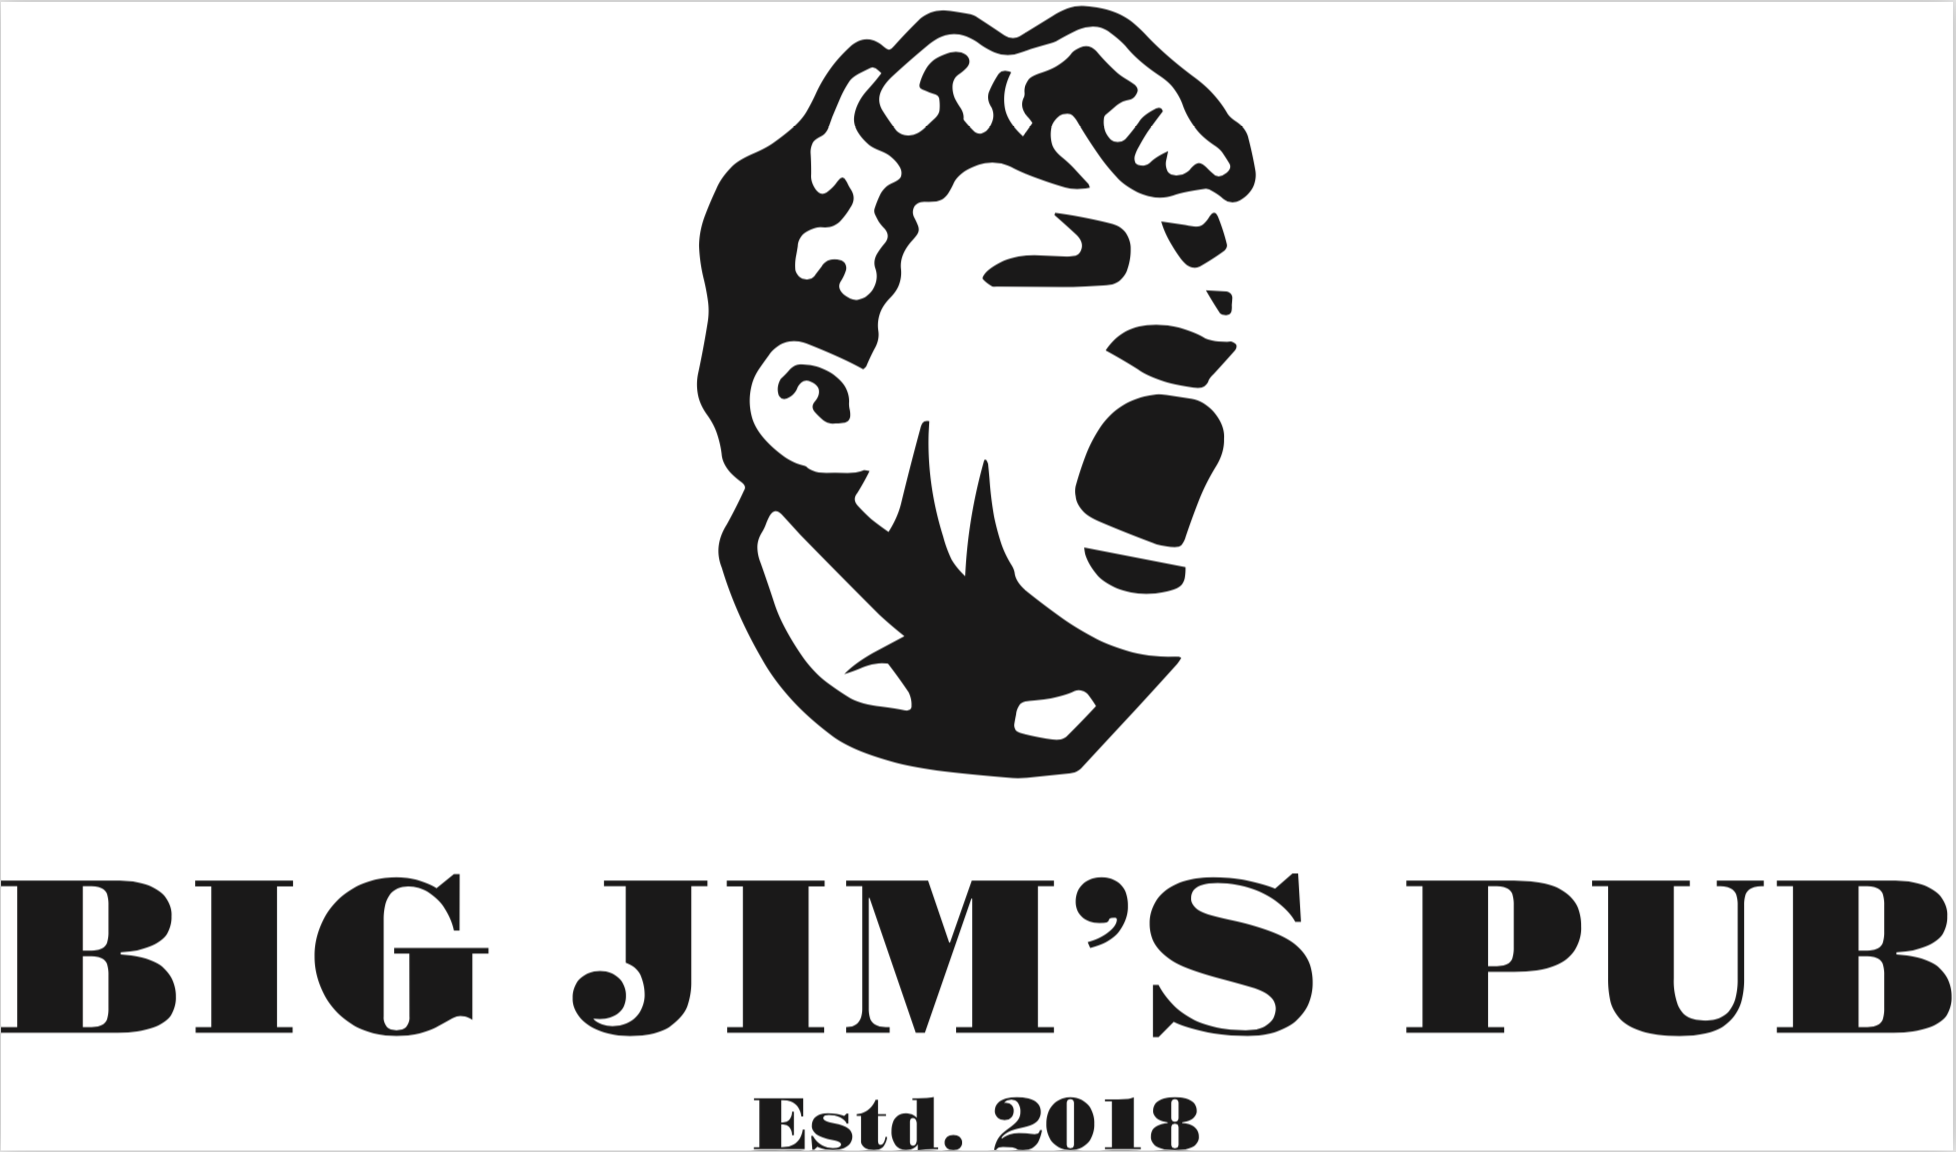 Биг Джим паб. Big Jim s pub Москва. Big Jims pub Никитская. Big Jims pub лого.